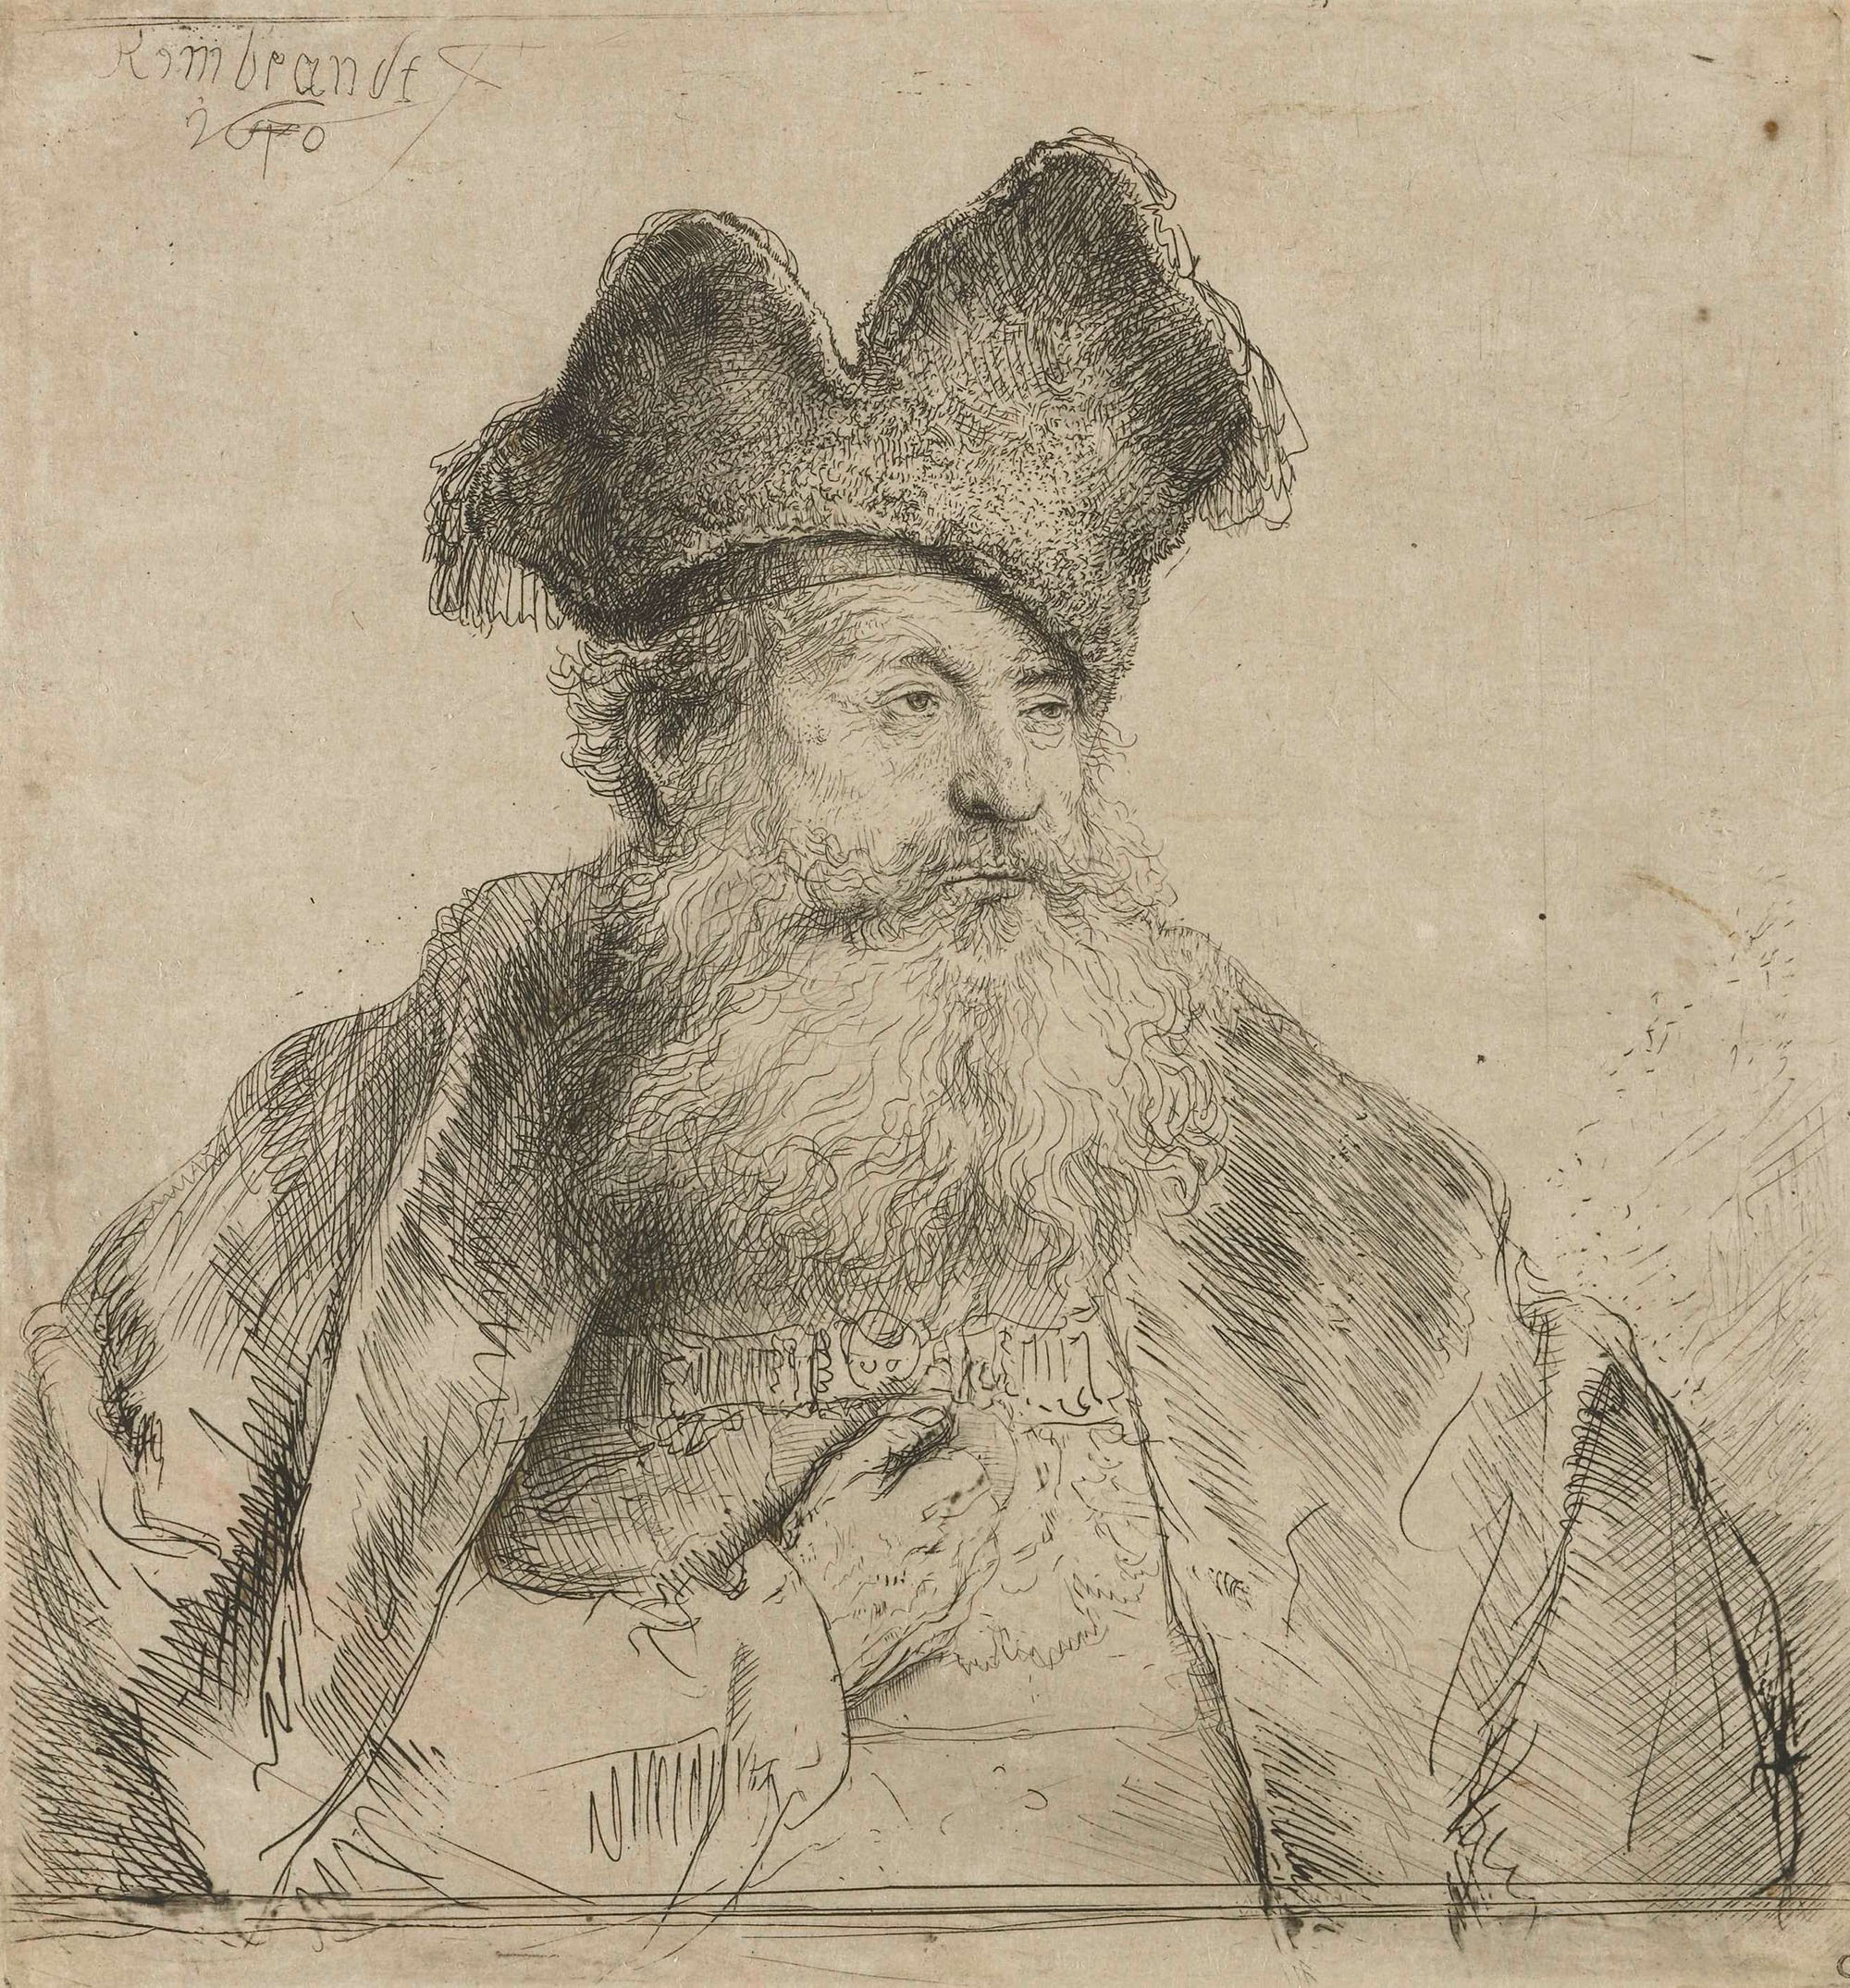 Рембрандт Харменс ван Рейн. "Старый мужчина в меховой шапке". 1640. Государственные художественные собрания Дрездена.